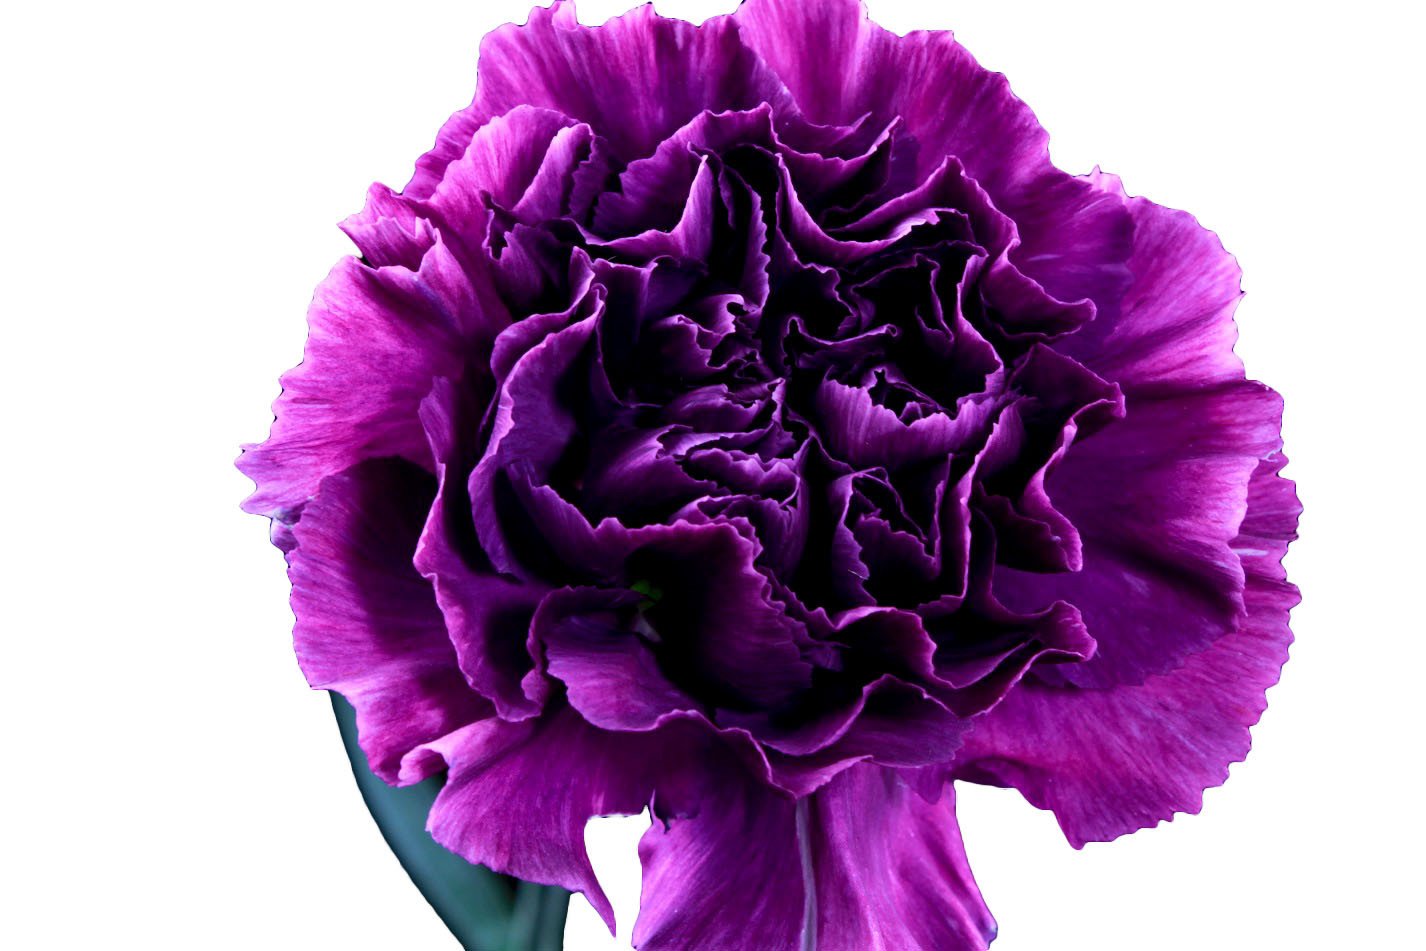 Tổng hợp hình ảnh hoa cẩm chướng tím đẹp nhất - [Kích thước hình ảnh: 1426x951 px]